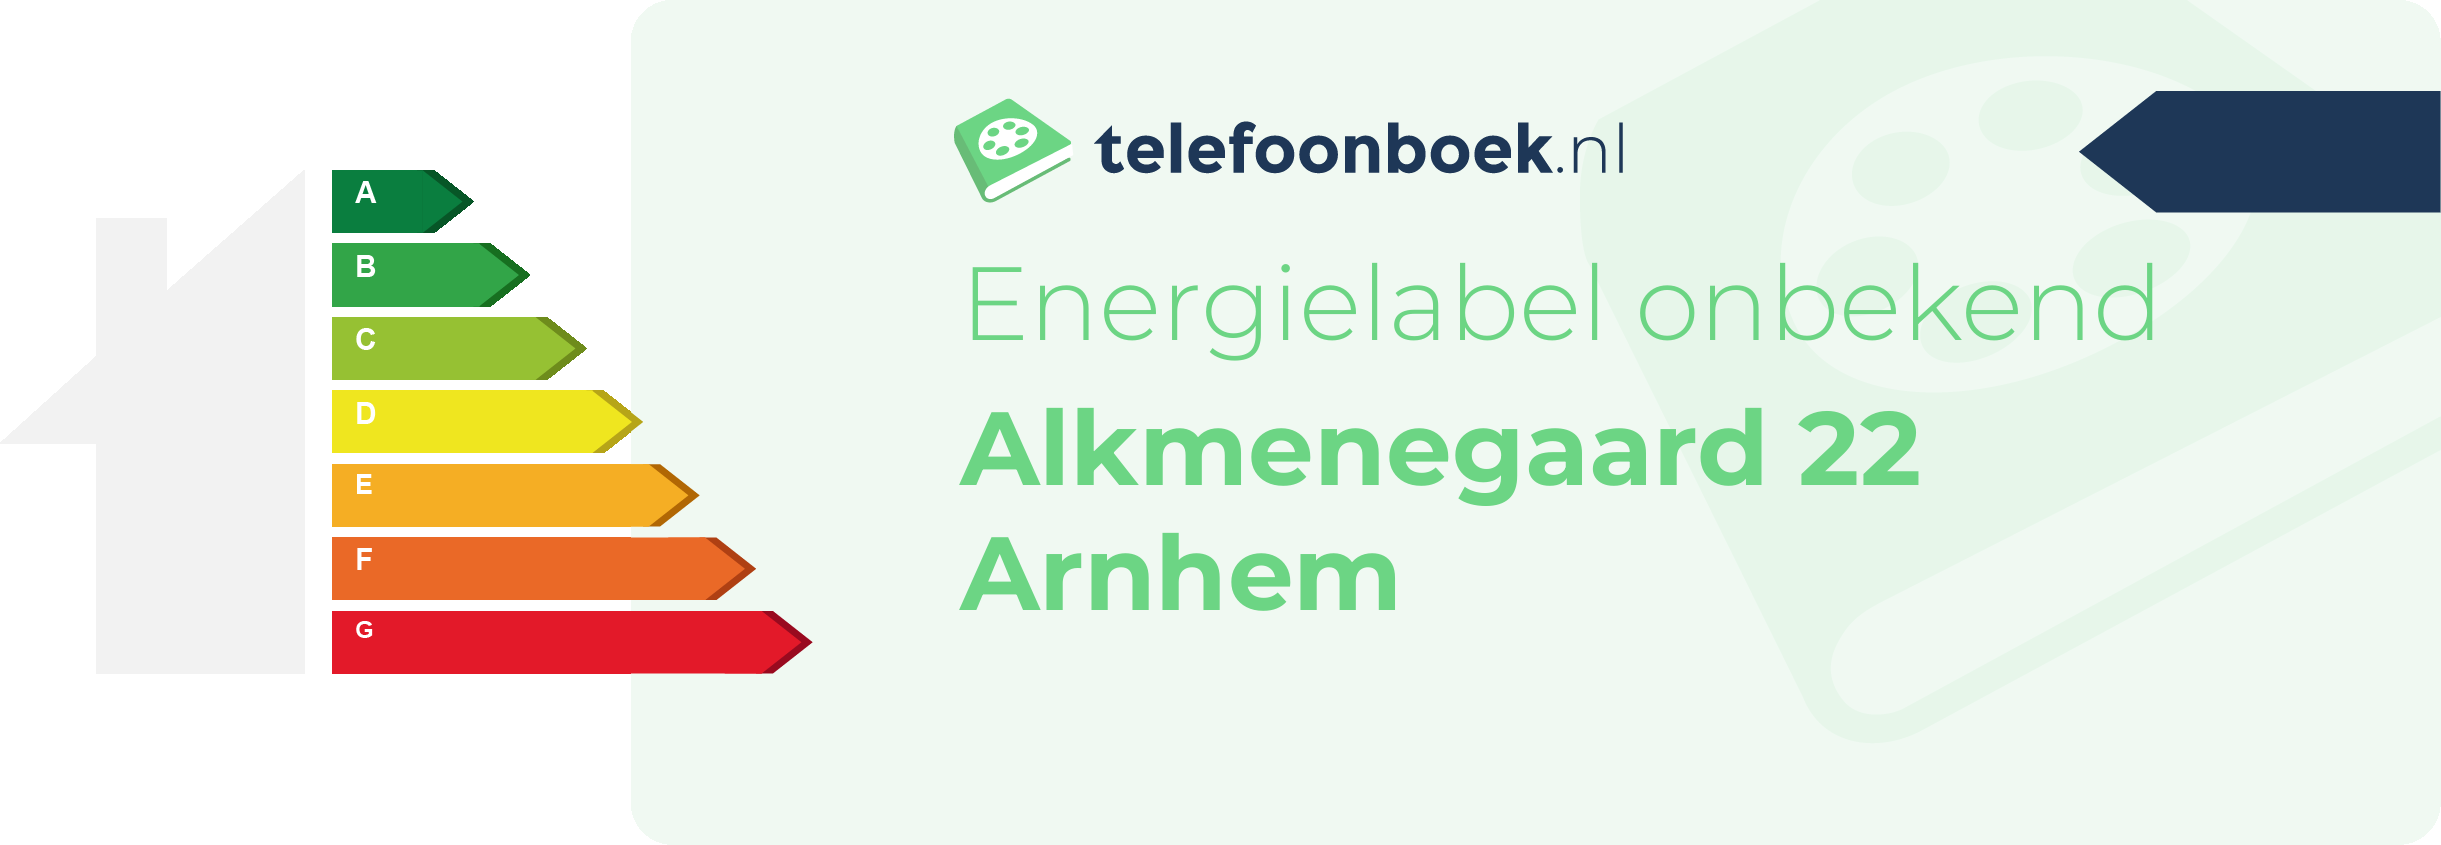 Energielabel Alkmenegaard 22 Arnhem